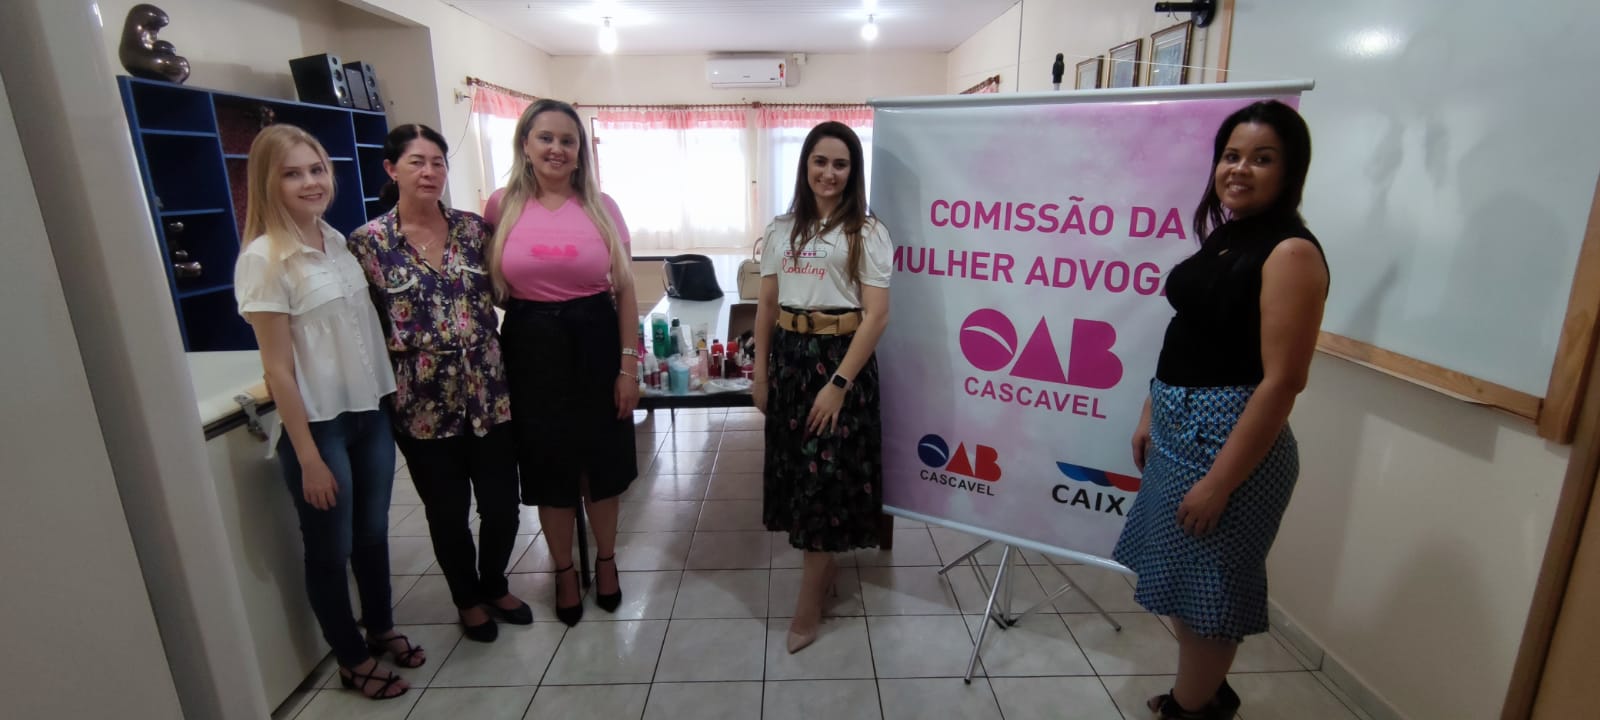 OAB Cascavel entrega donativos da campanha Autoestima Solidária